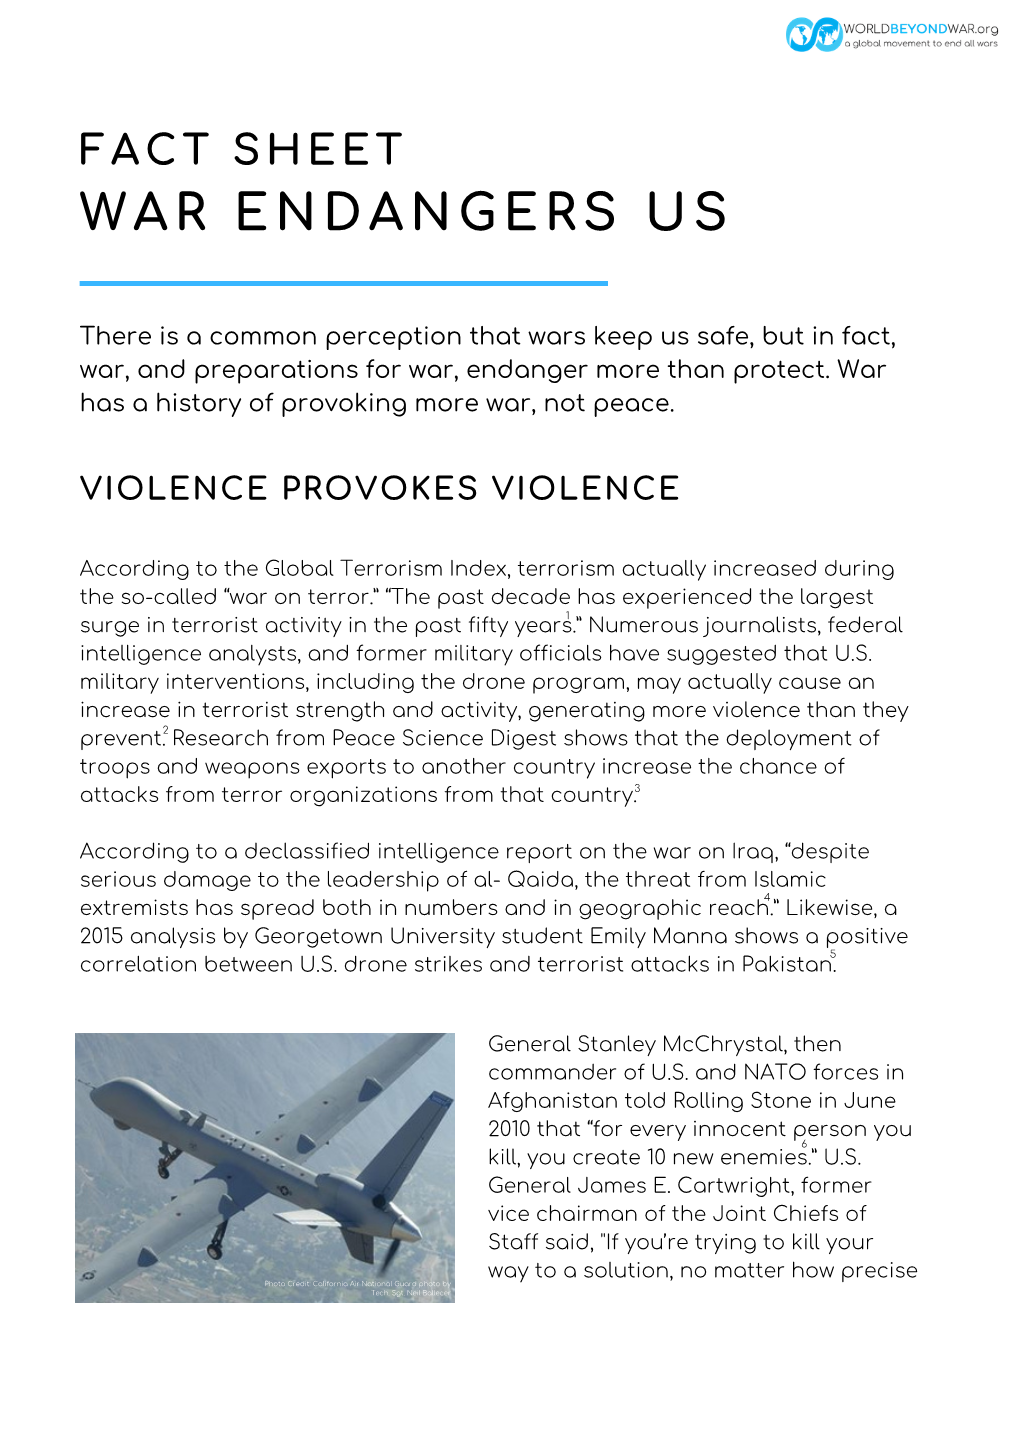 War Endangers Us